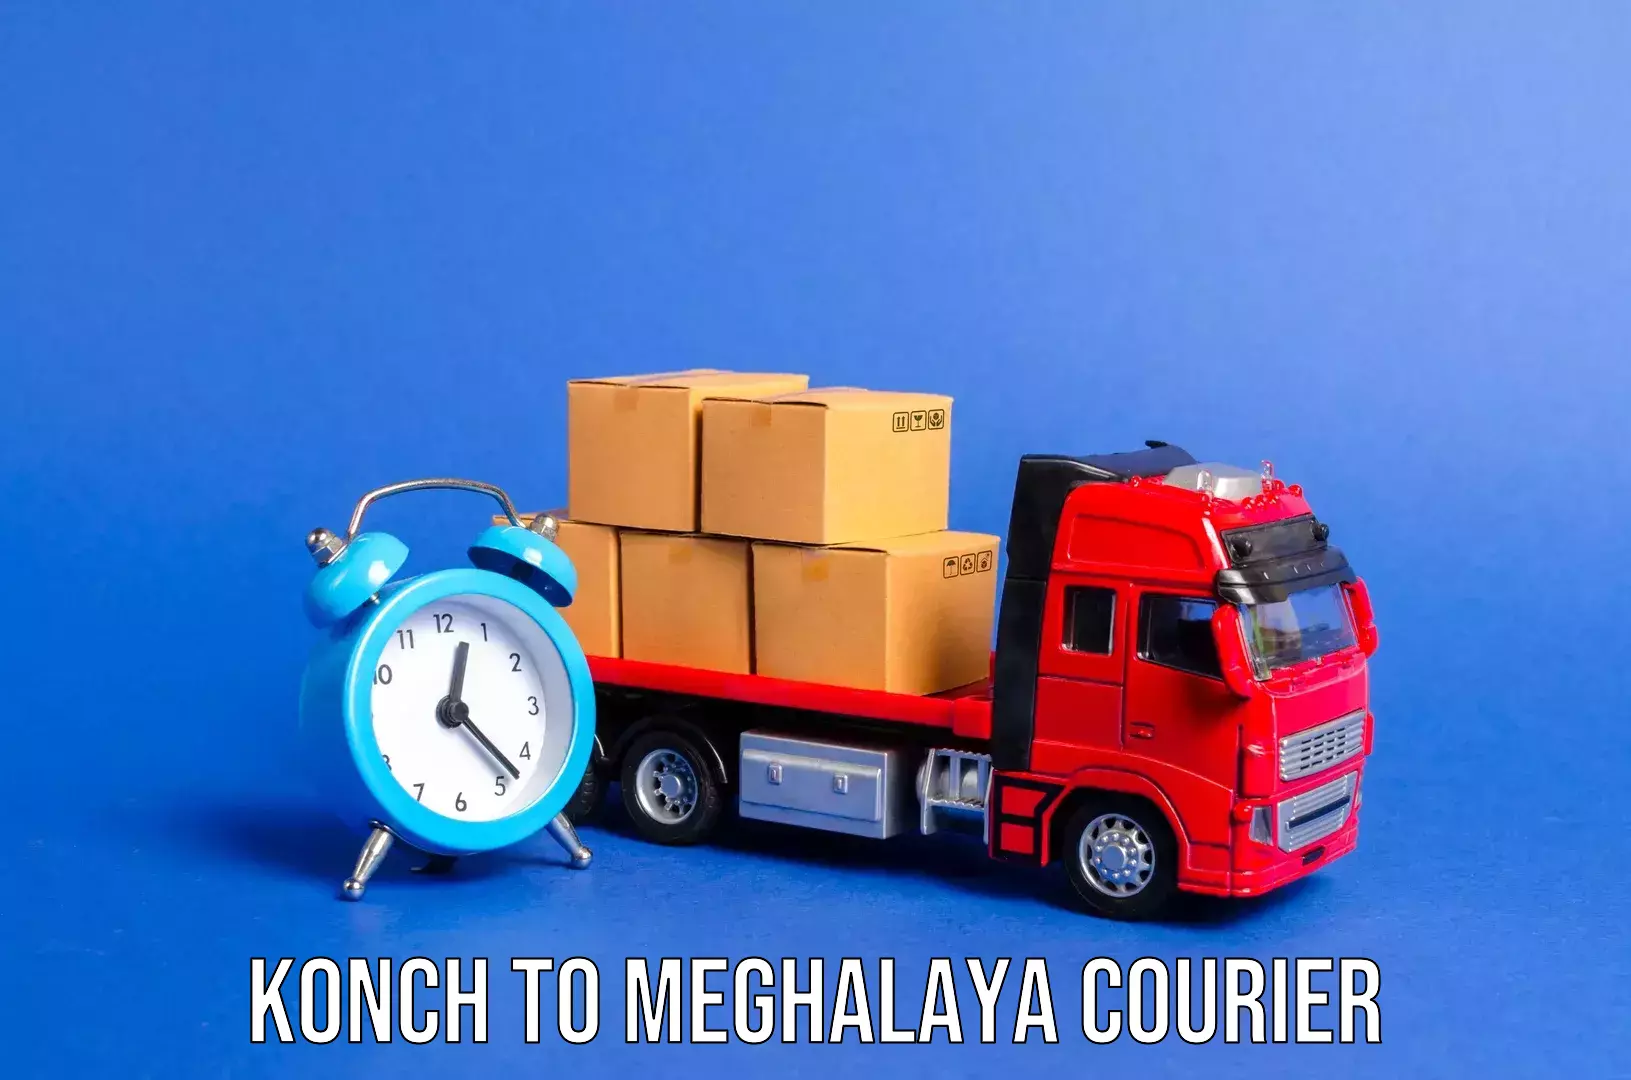 Luggage shipment specialists Konch to Cherrapunji